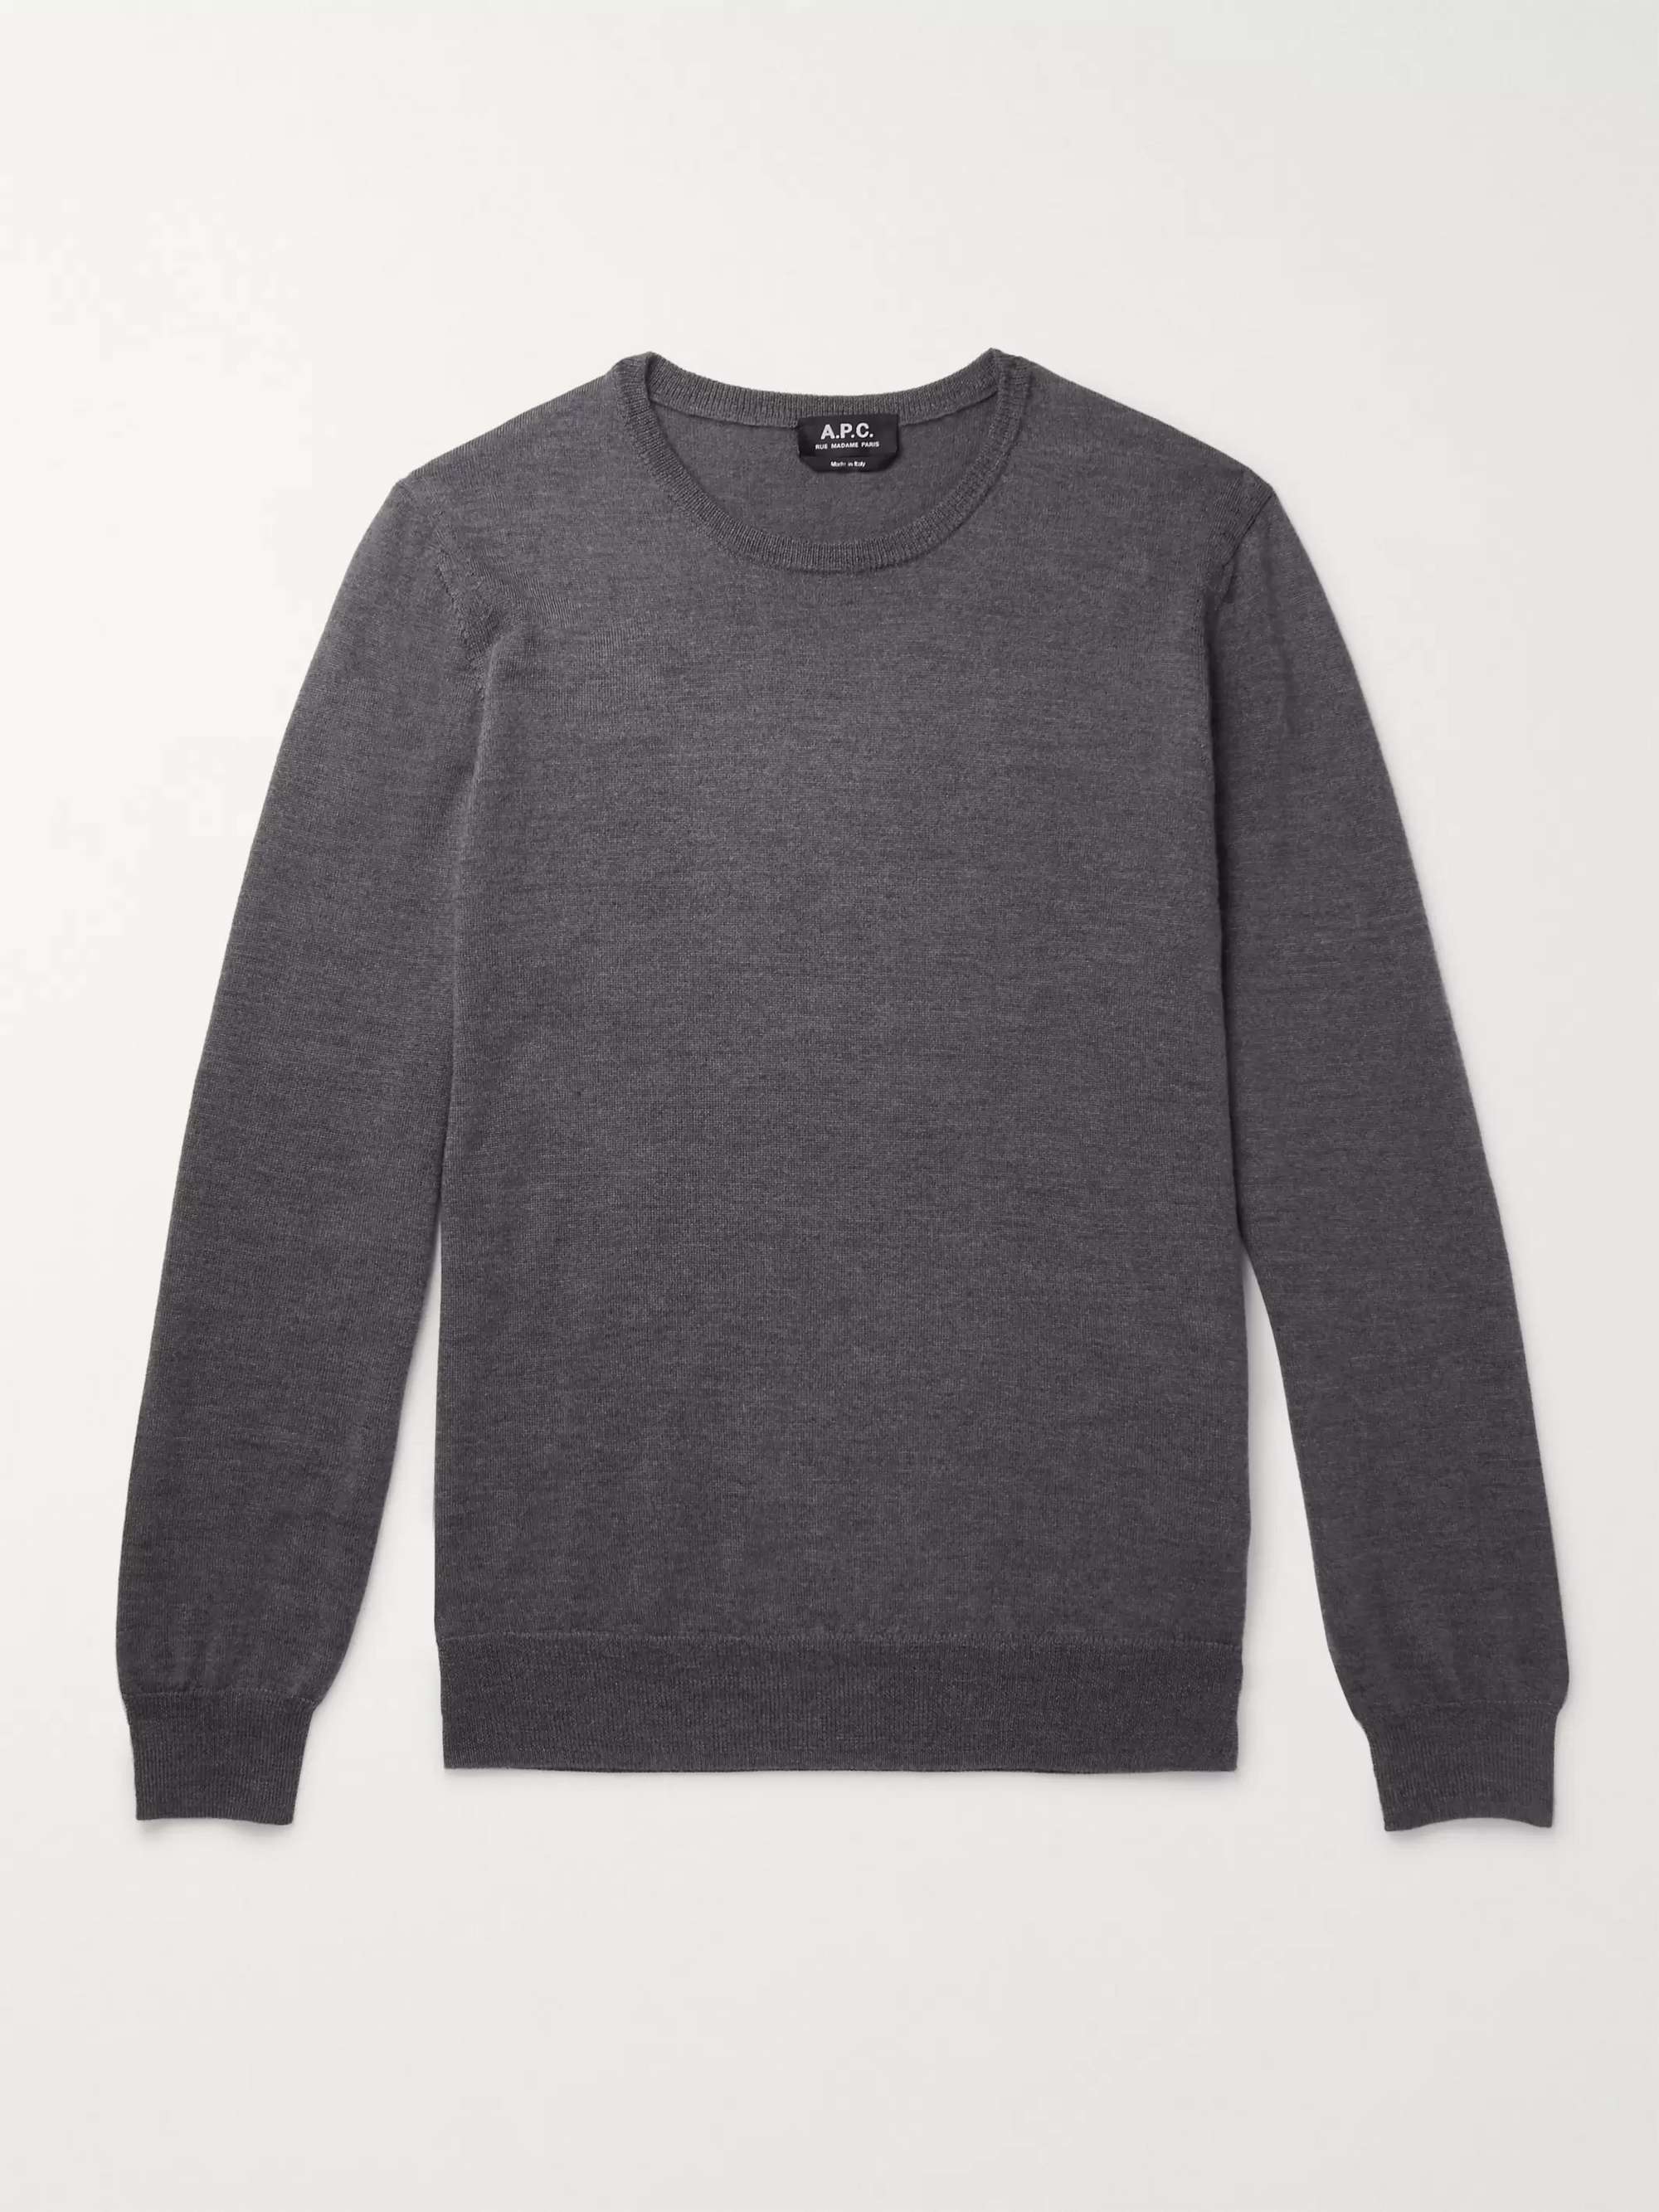 A.P.C. King Merino Wool Sweater for Men | MR PORTER